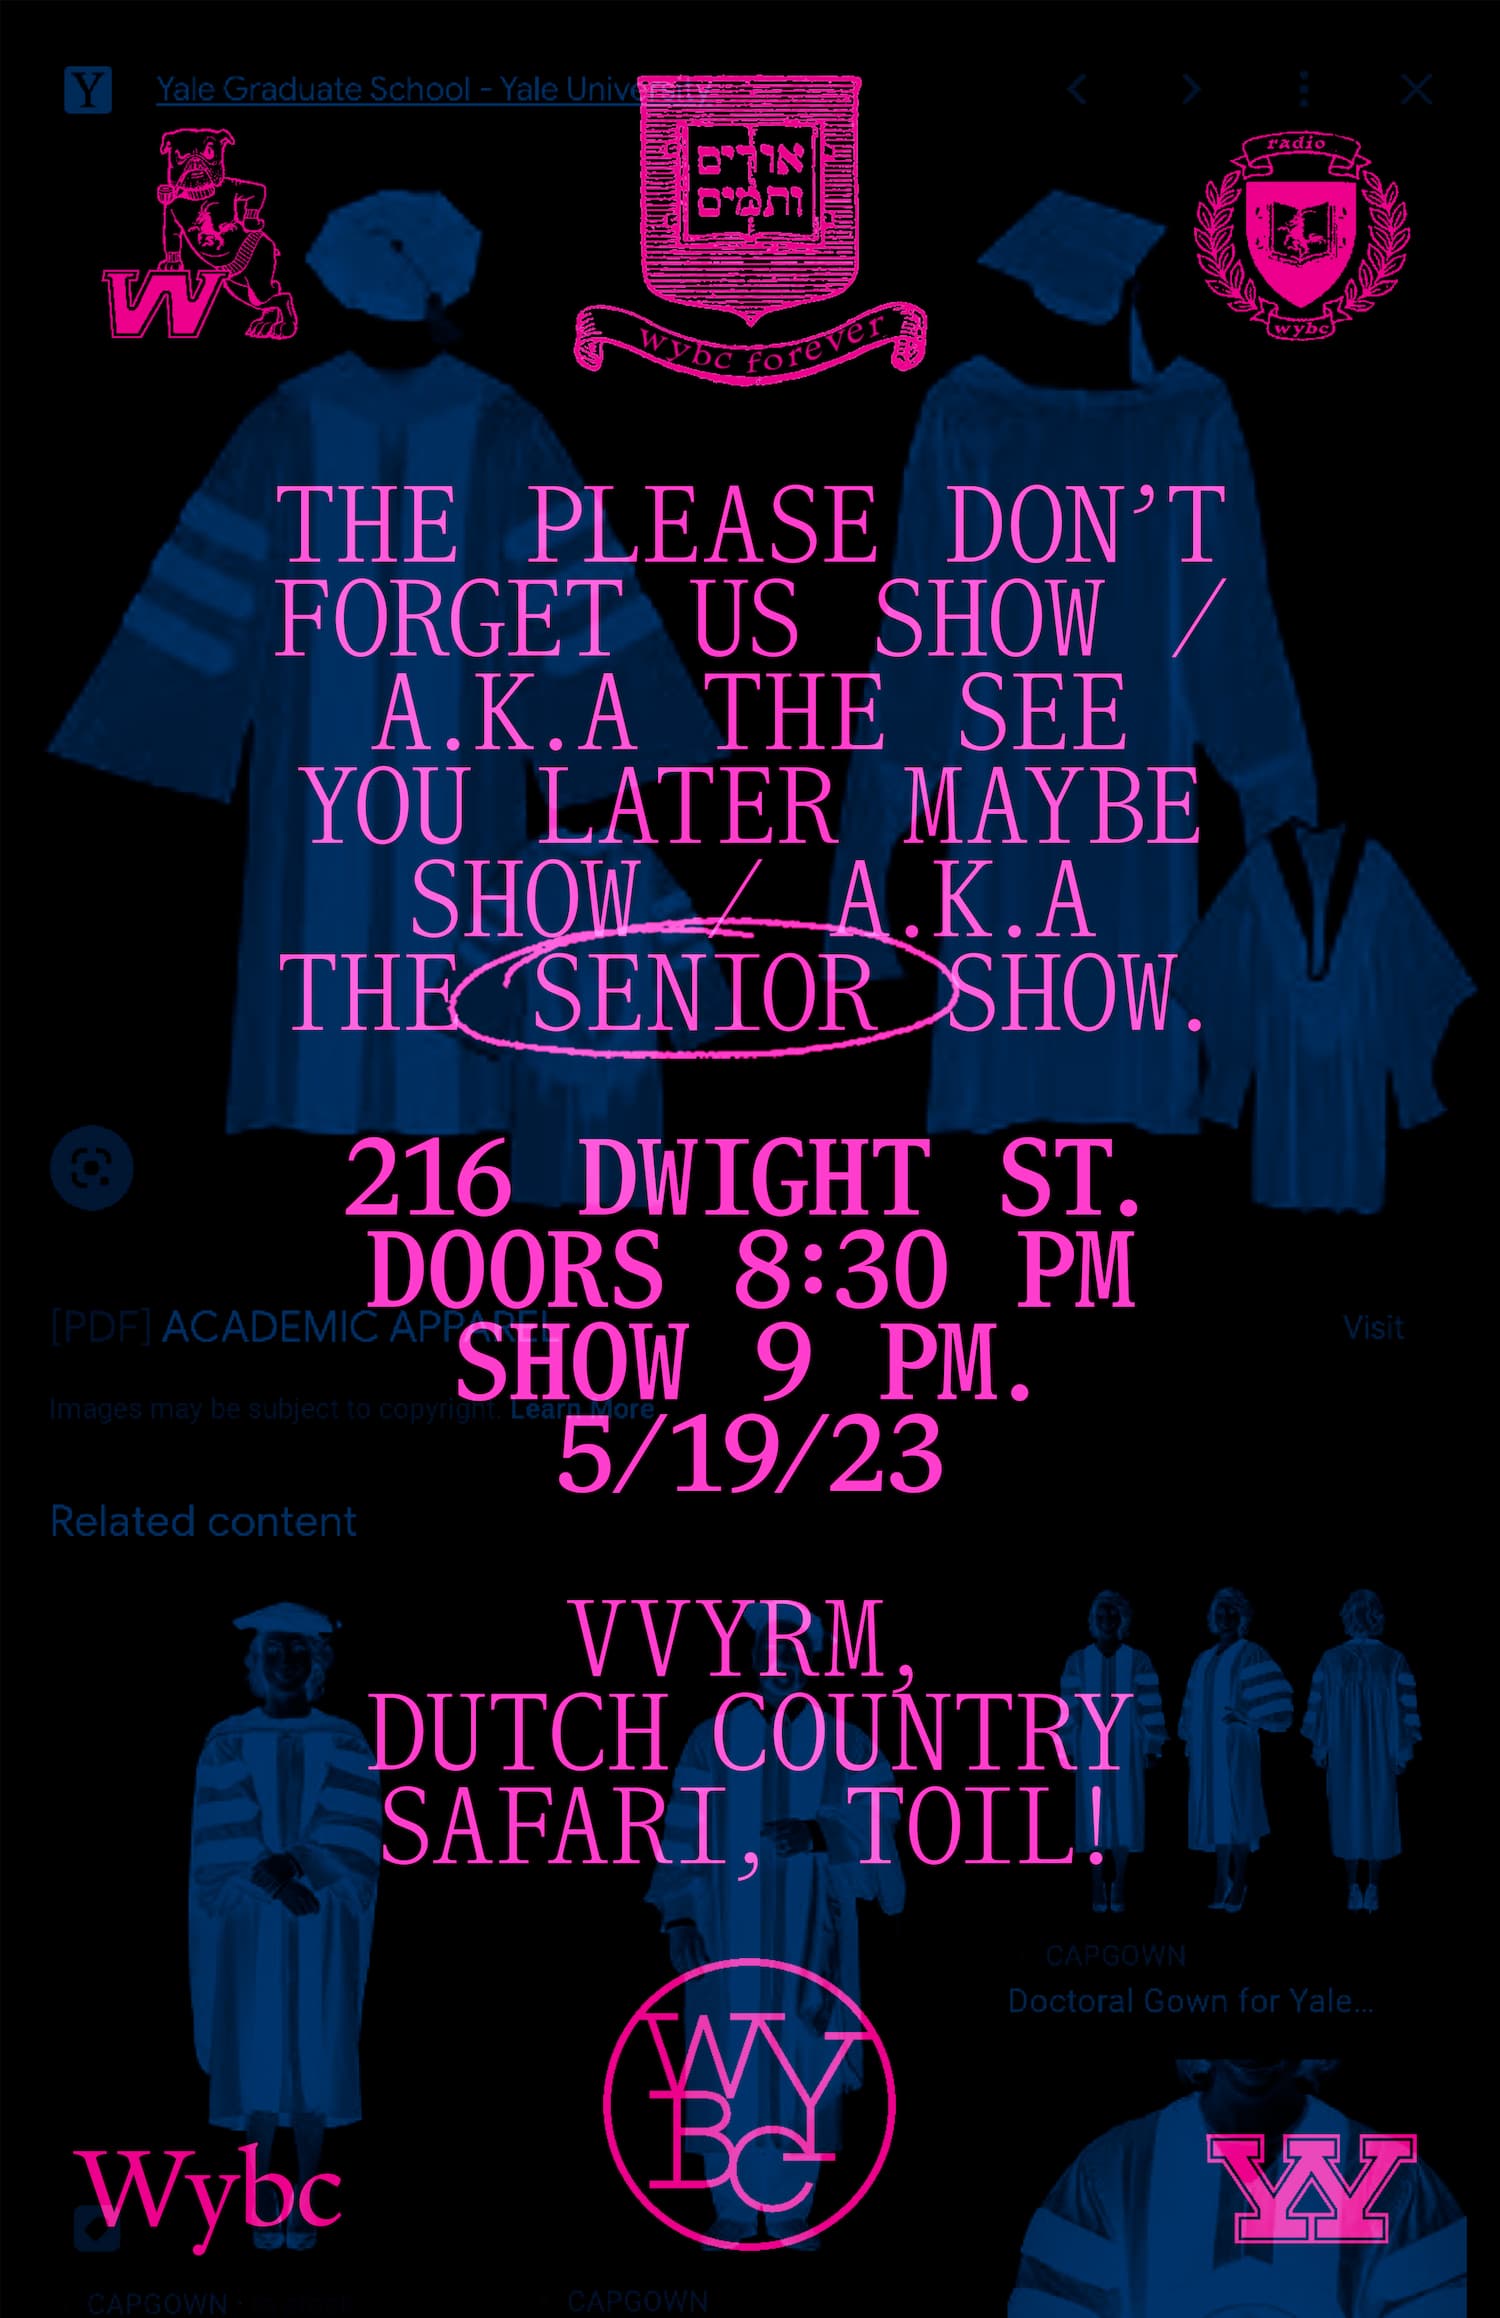 Tabloid poster, WYBC senior show